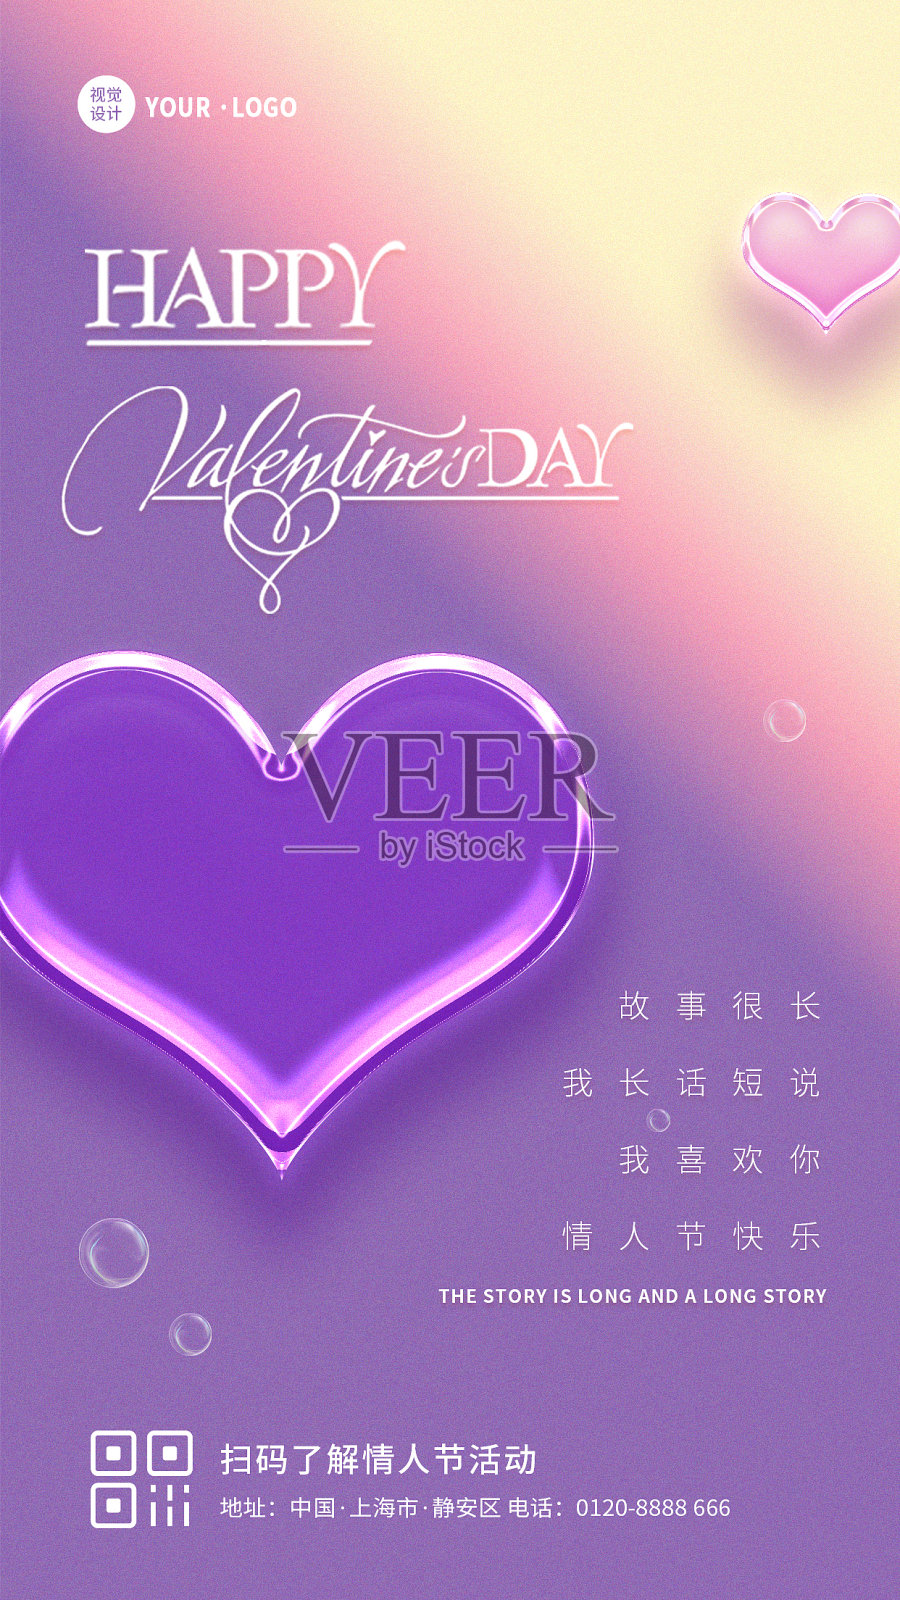 浪漫清新创意爱心情人节节日祝福宣传手机海报设计模板素材